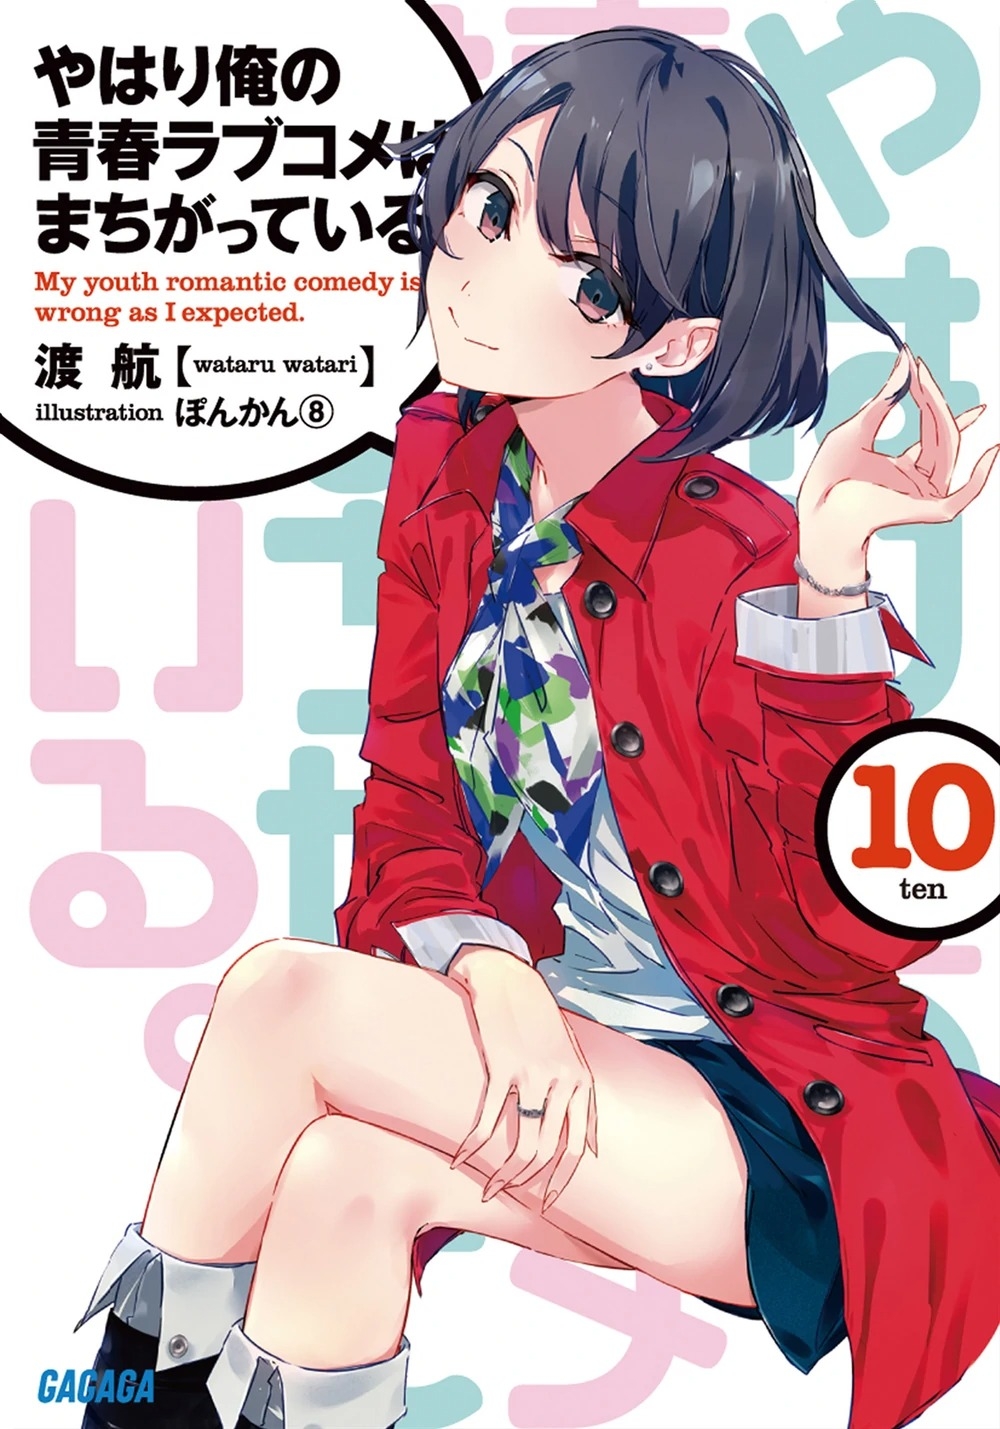 [light novel] yahari ore no seishun love come wa machigatteiru illust compliation 123